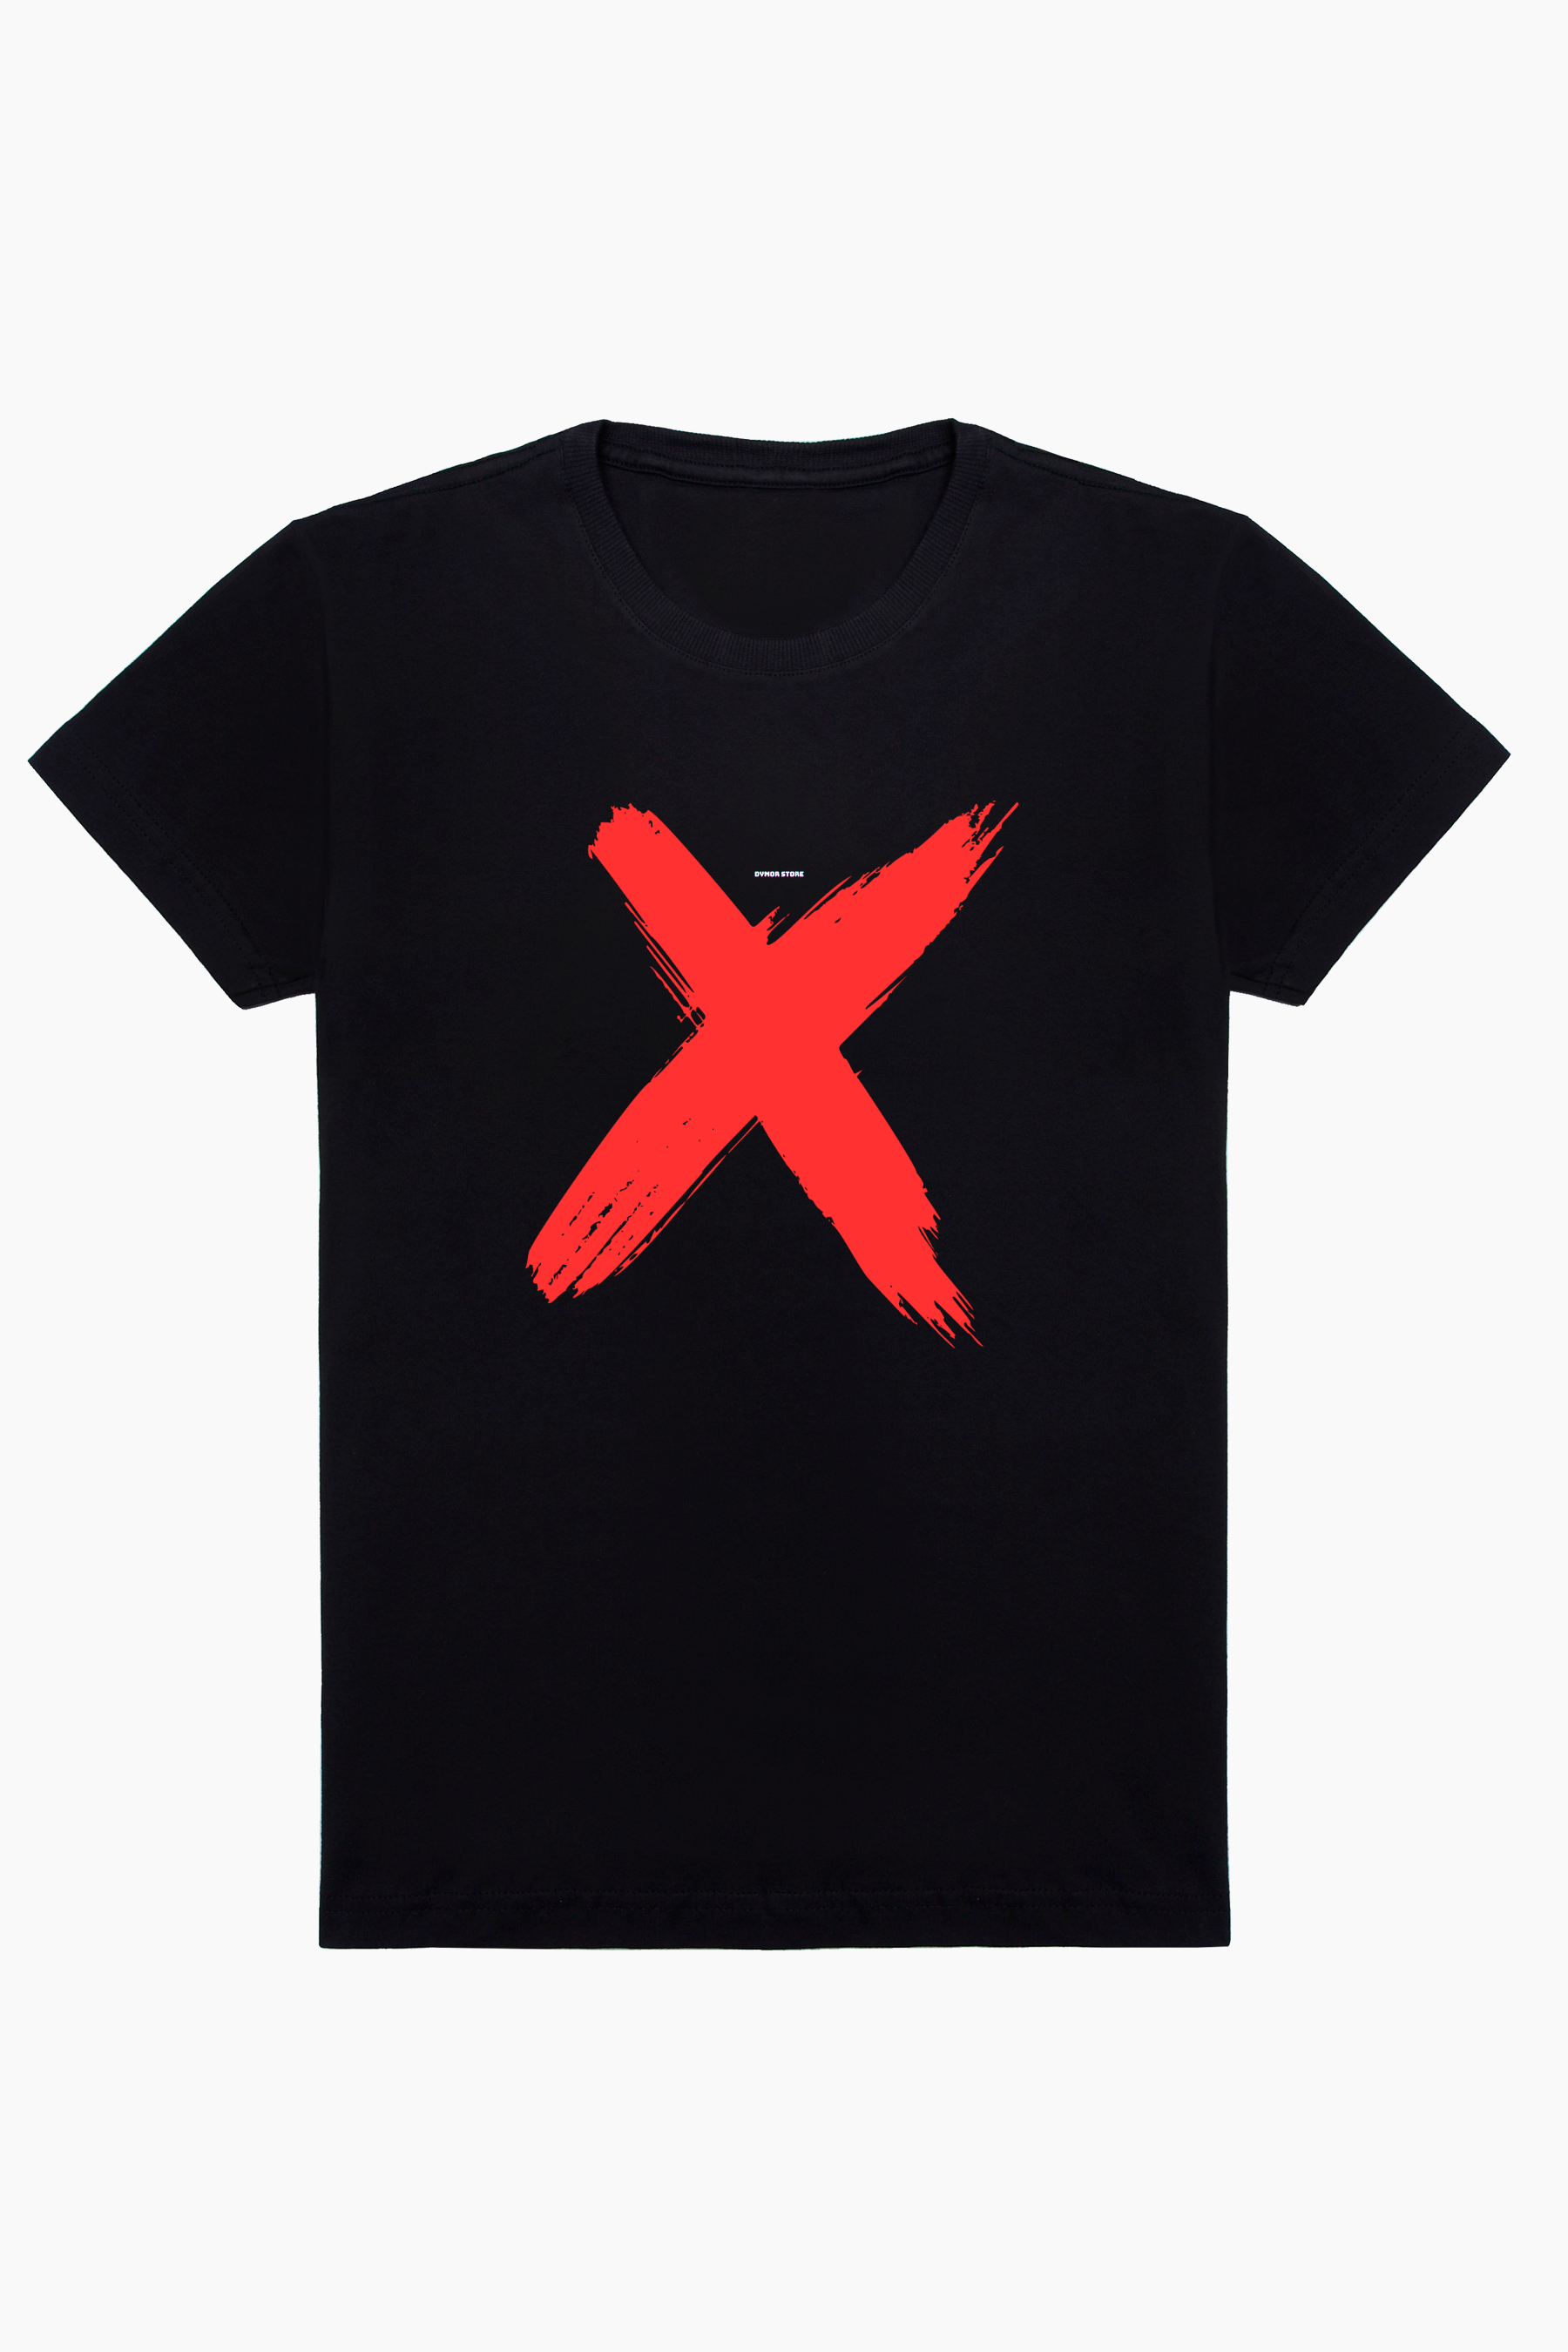 Camiseta X Marks the Spot2 - DYMOR